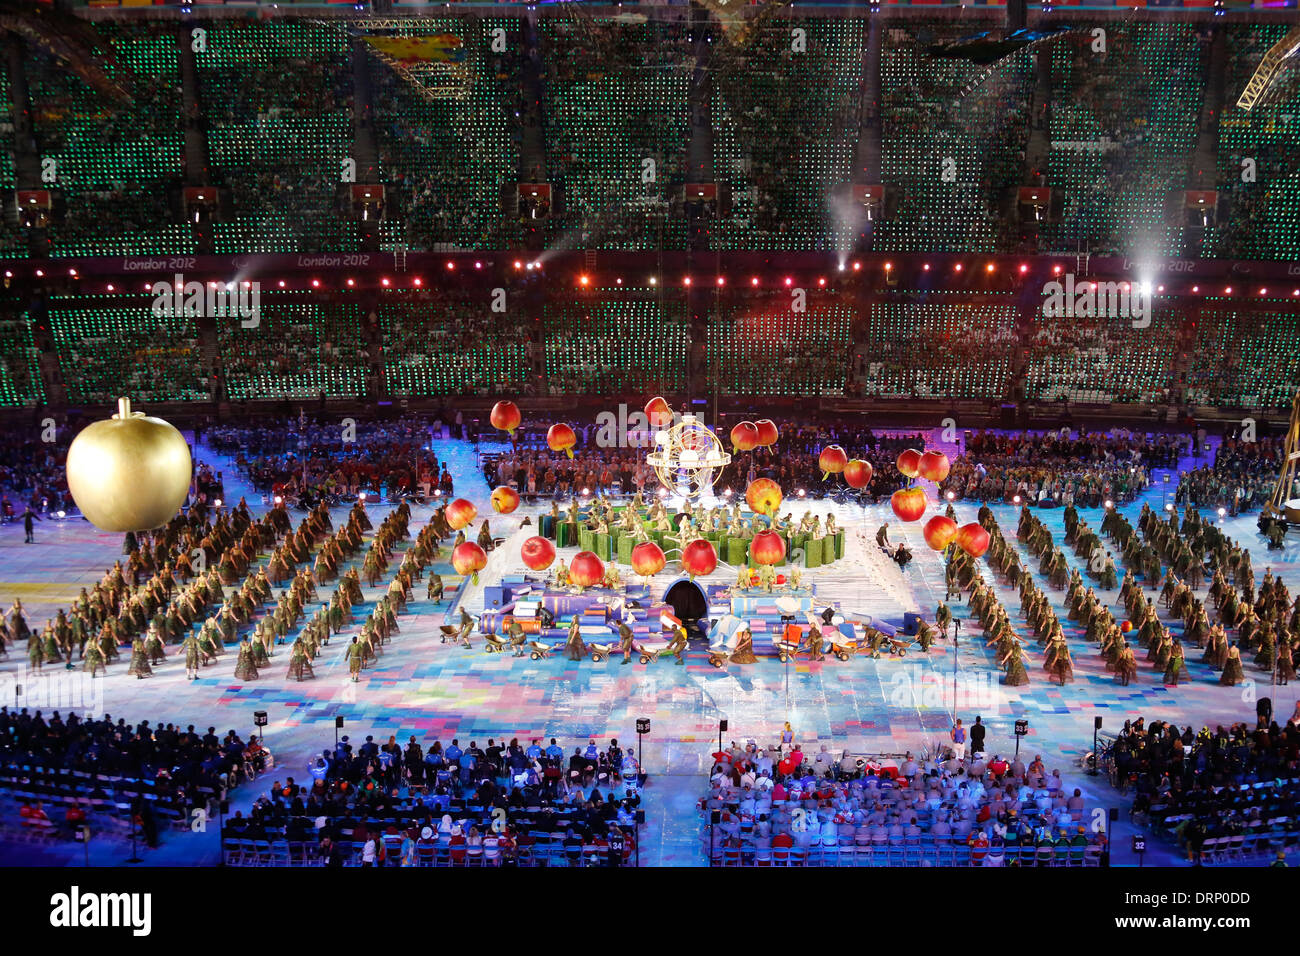 Les artistes interprètes ou exécutants dans le stade olympique lors de la cérémonie d'ouverture des Jeux Paralympiques de 2012 à Londres Banque D'Images